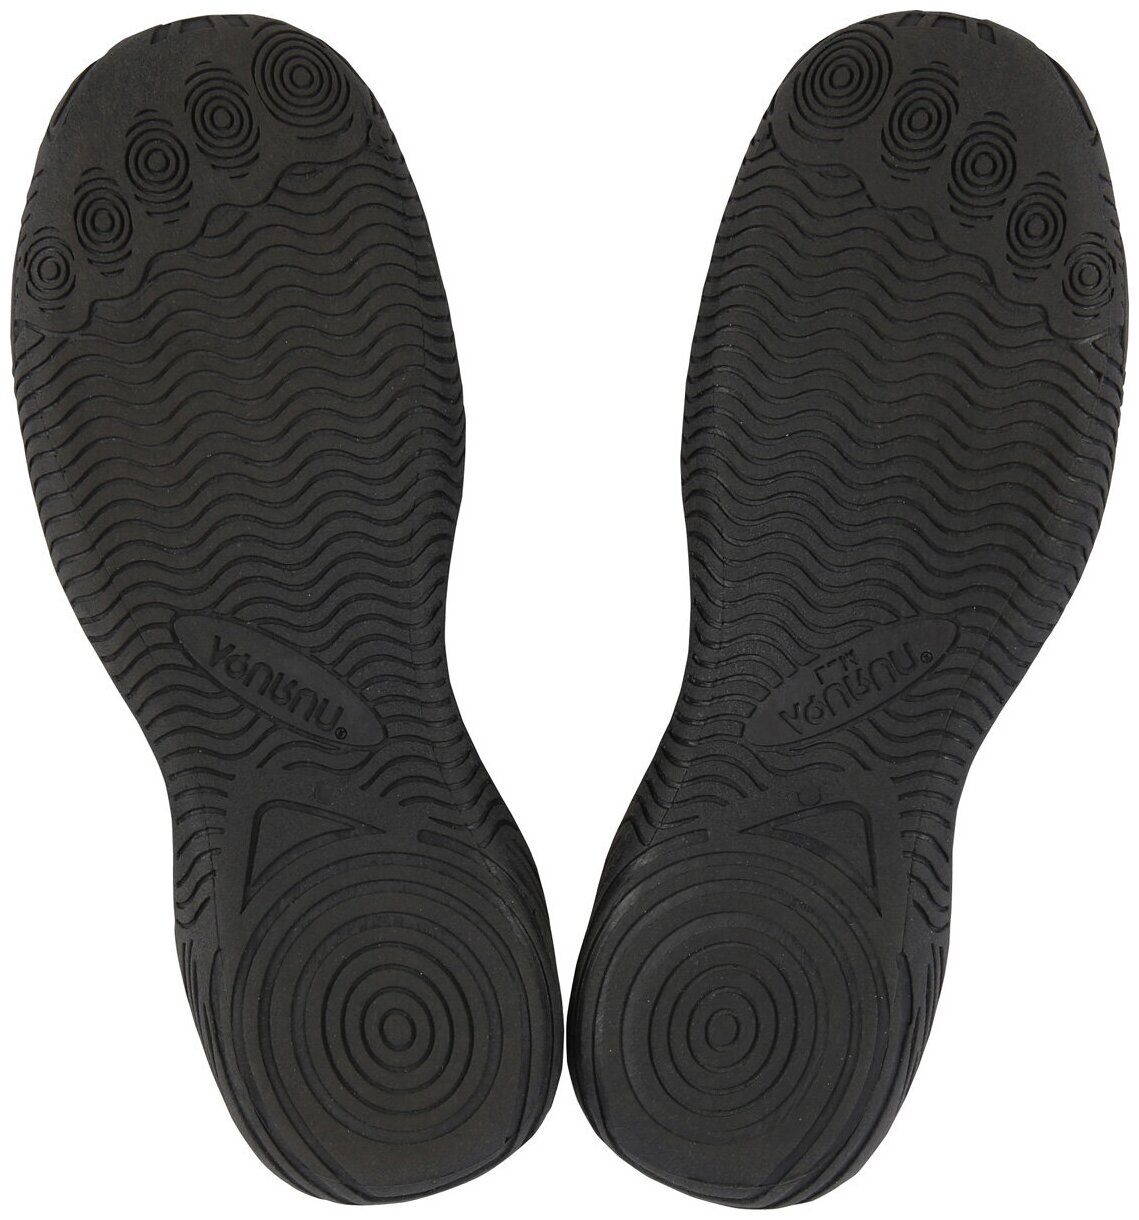 Обувь для кораллов Aqurun Edge, цвет: черный, синий. AQU-BKBL. Размер 30/31